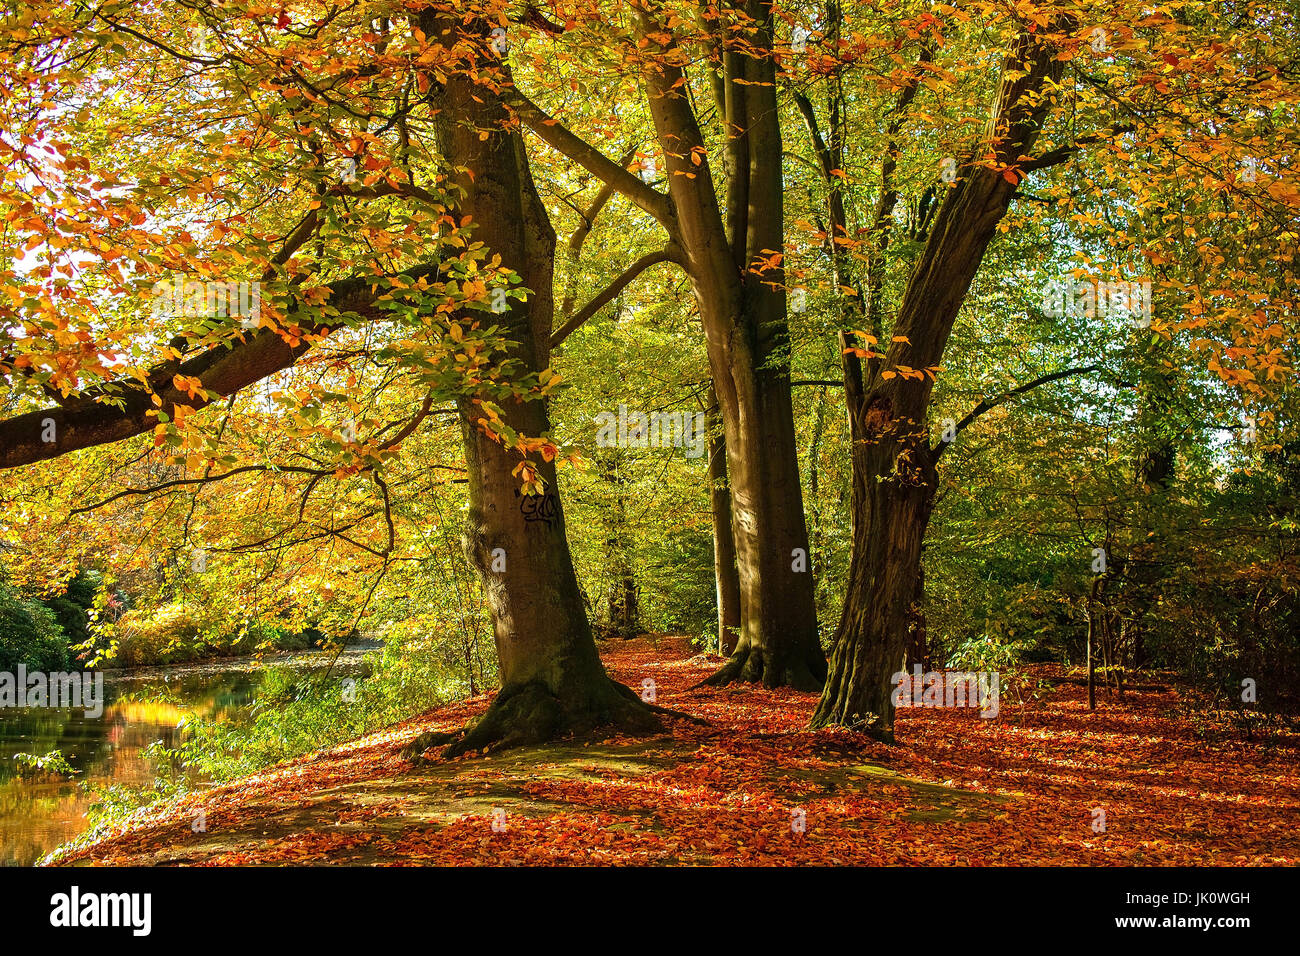 Laub-Teppich unter Copper Beeches in Herbst, Laubteppich Unter Rotbuchen Im herbst Stockfoto